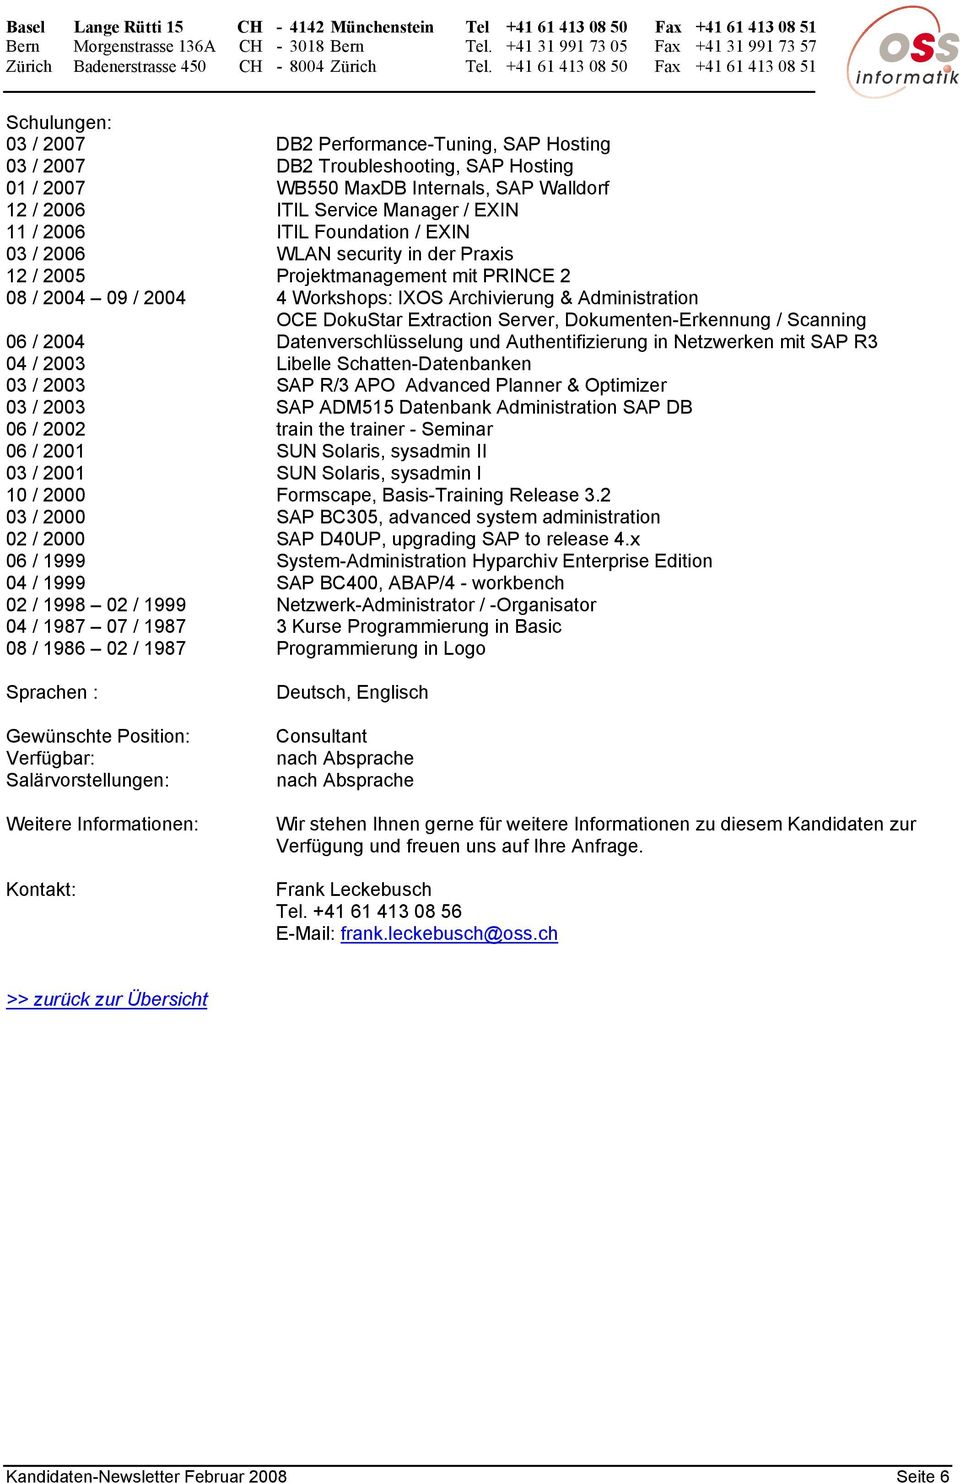 Dokumenten-Erkennung / Scanning 06 / 2004 Datenverschlüsselung und Authentifizierung in Netzwerken mit SAP R3 04 / 2003 Libelle Schatten-Datenbanken 03 / 2003 SAP R/3 APO Advanced Planner & Optimizer